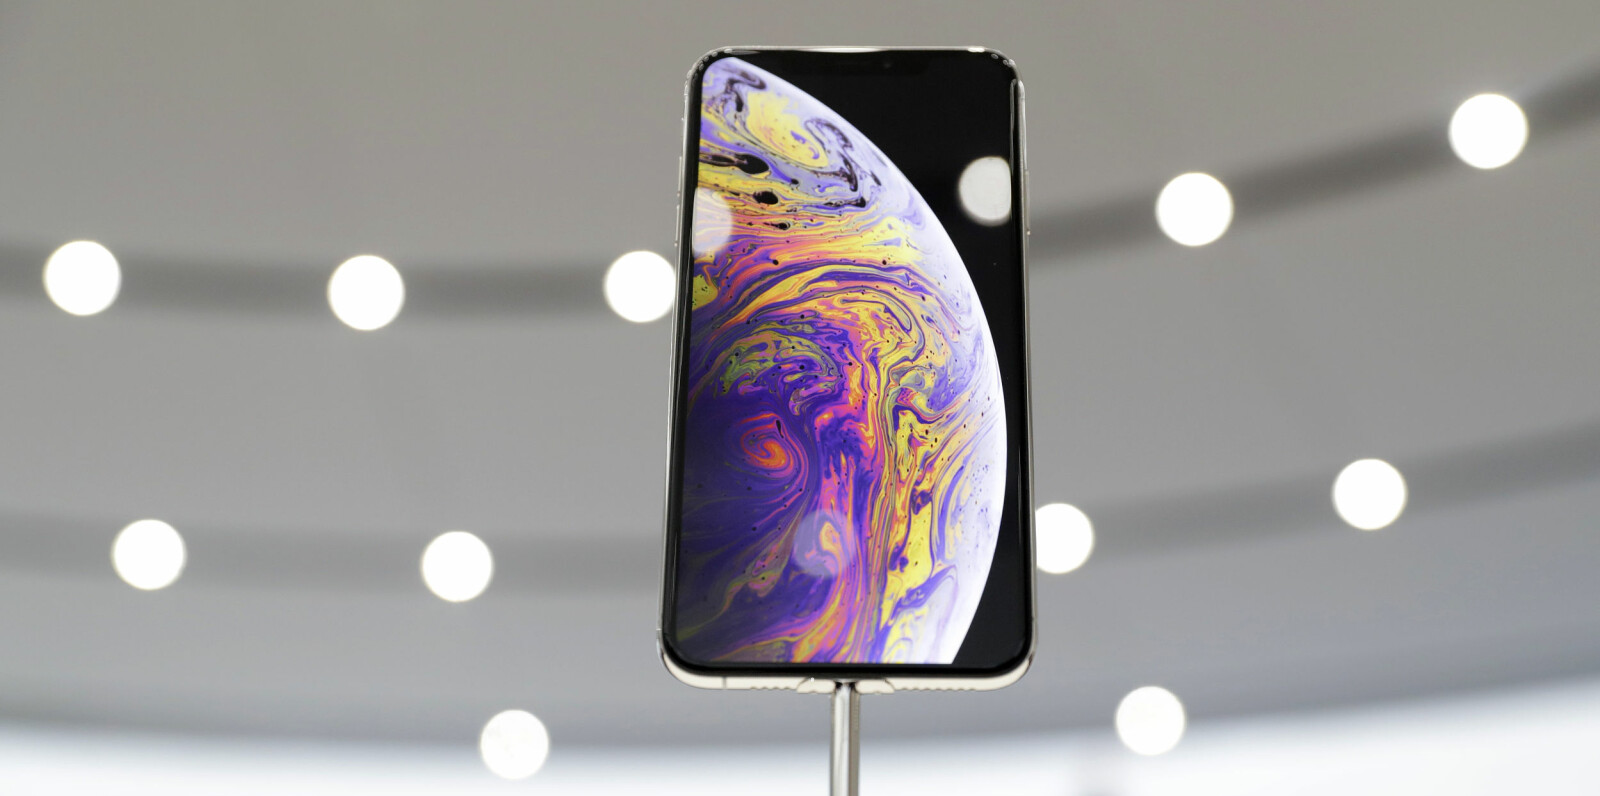 <b>NY IPHONE:</b> Her er Apples nye iPhone-flaggskip, iPhone XS Max. Prisen for modellen med 512 GB lagringsplass er 17.000 kroner.